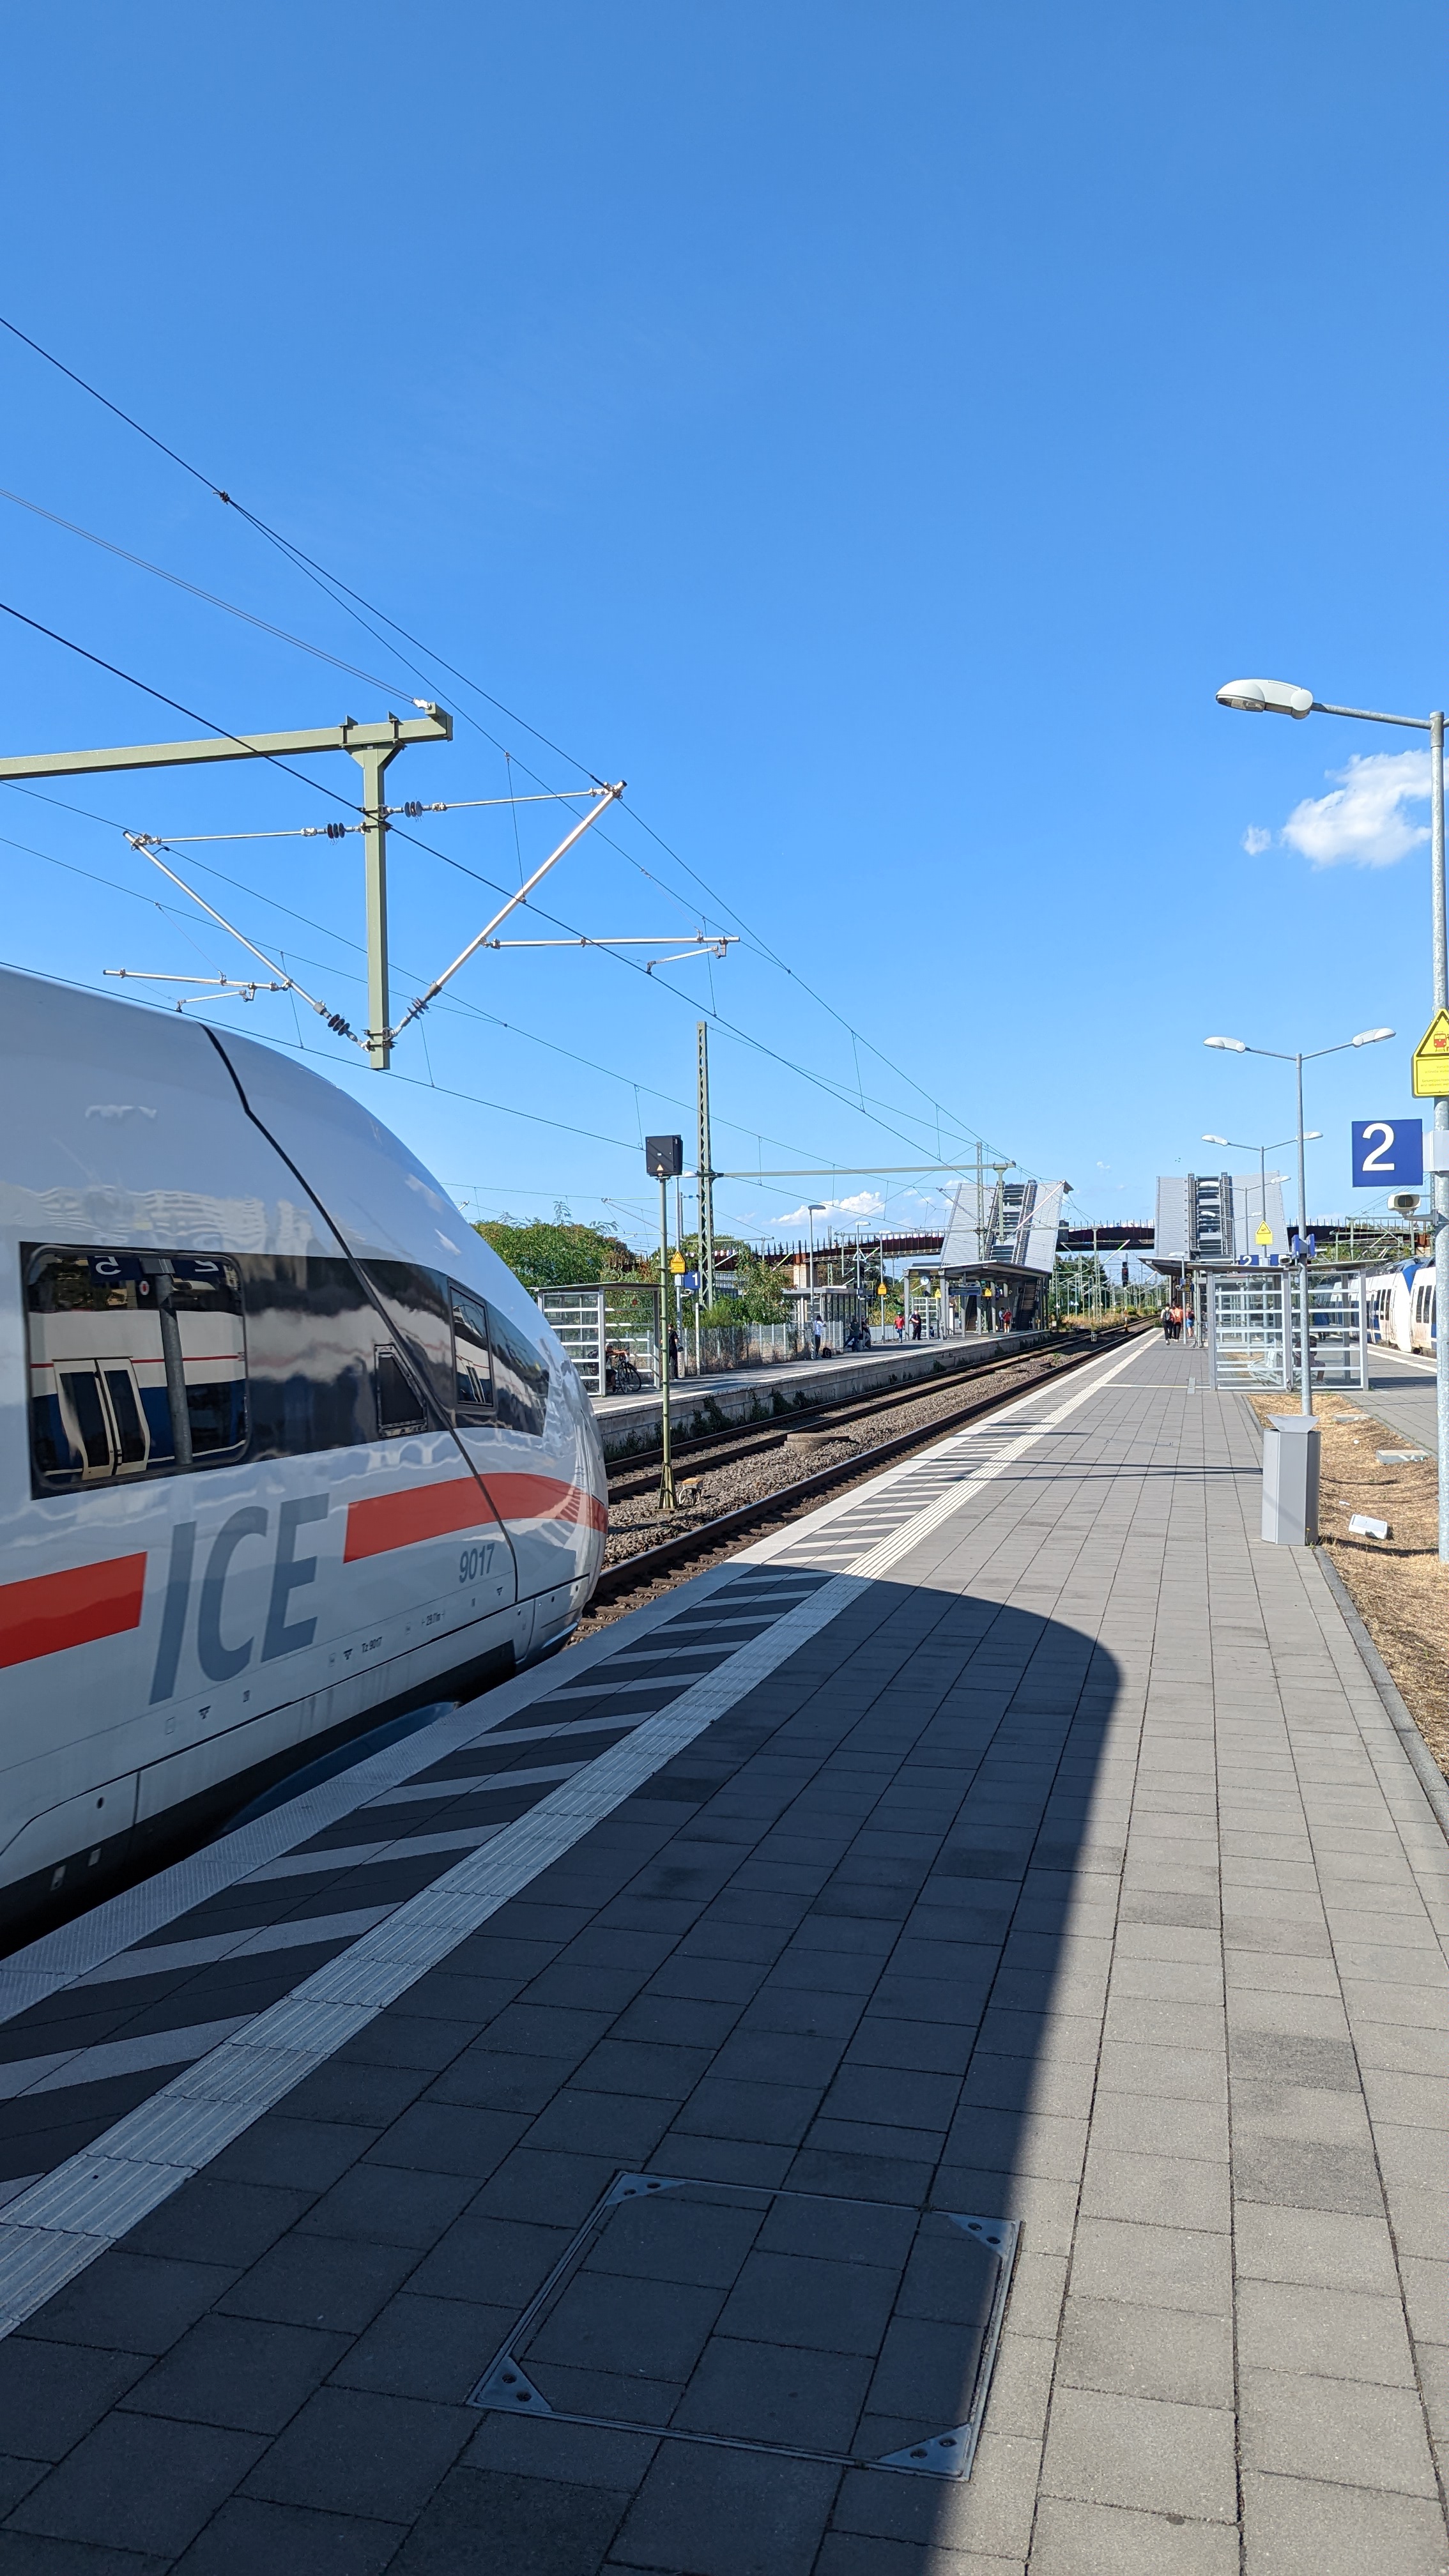 Durchfahrender ICE am Bahnhof Opladen